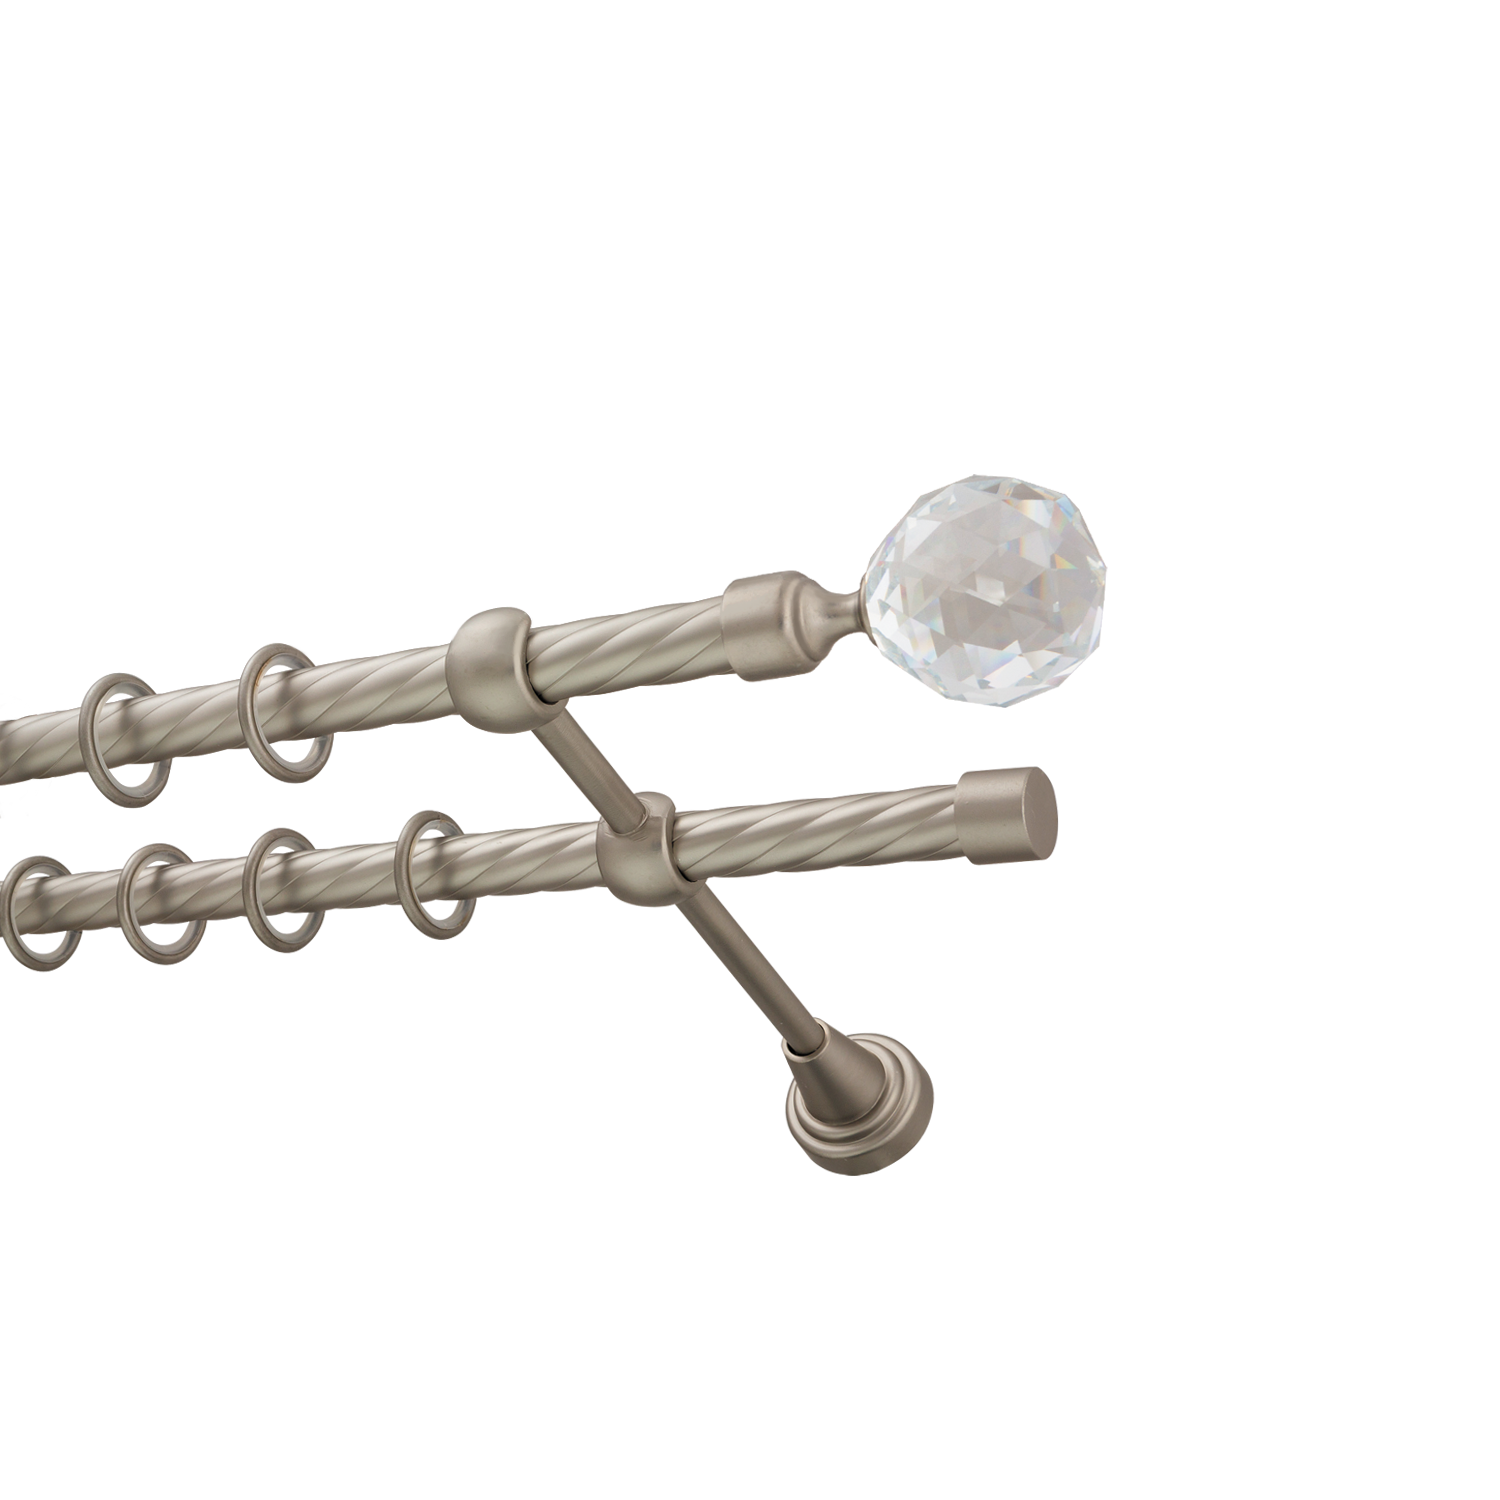 Металлический карниз для штор Карат, двухрядный 16/16 мм, сталь, витая штанга, длина 140 см - фото Wikidecor.ru